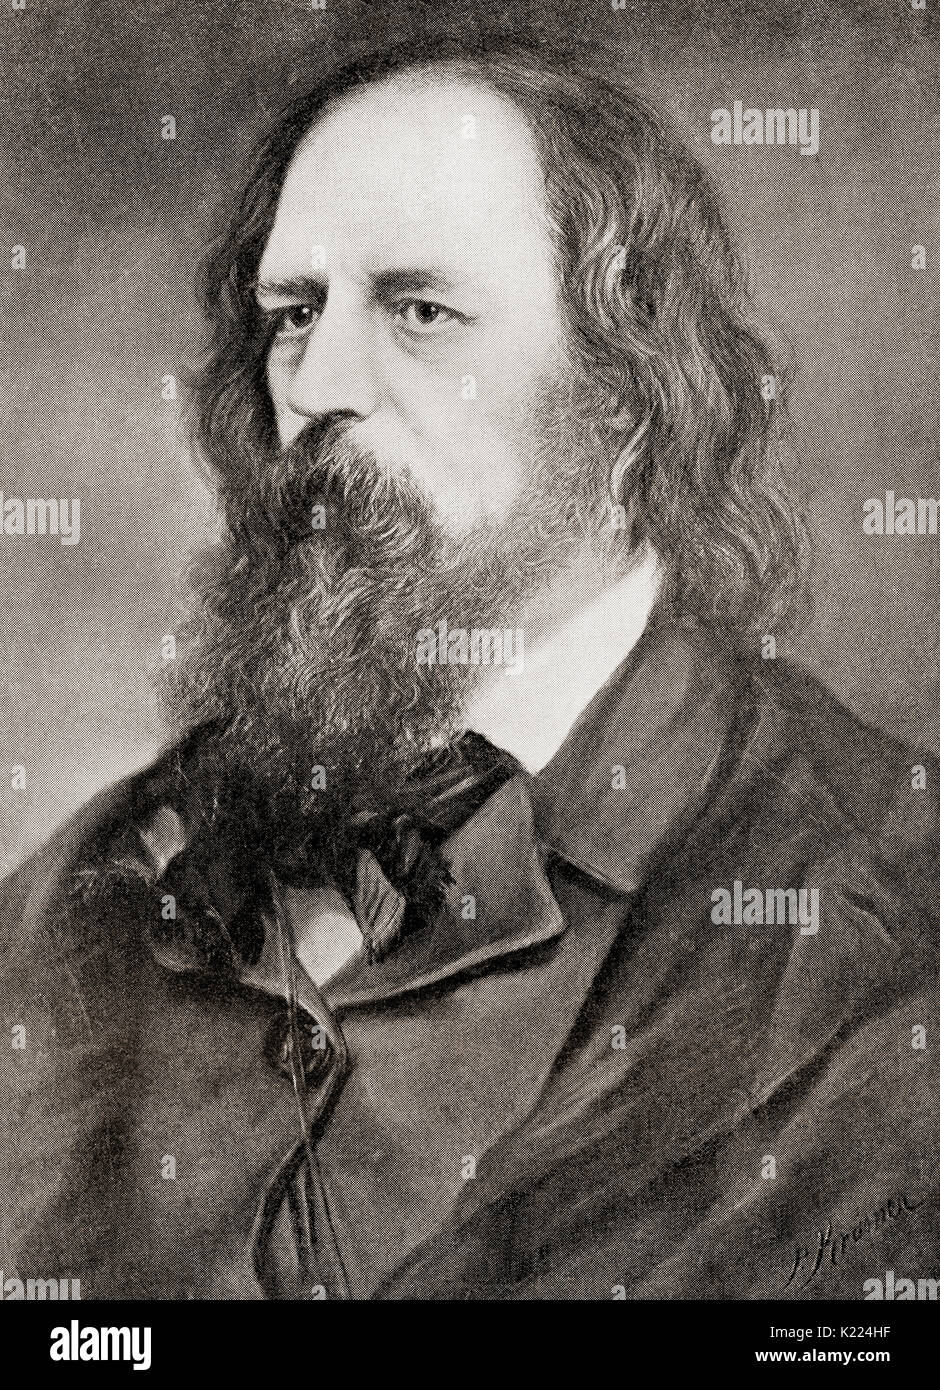 Alfred Tennyson, primo Baron Tennyson, 1809 - 1892. Poeta laureato di Gran Bretagna e Irlanda. Dalla libreria internazionale della famosa letteratura pubblicata c.1900 Foto Stock